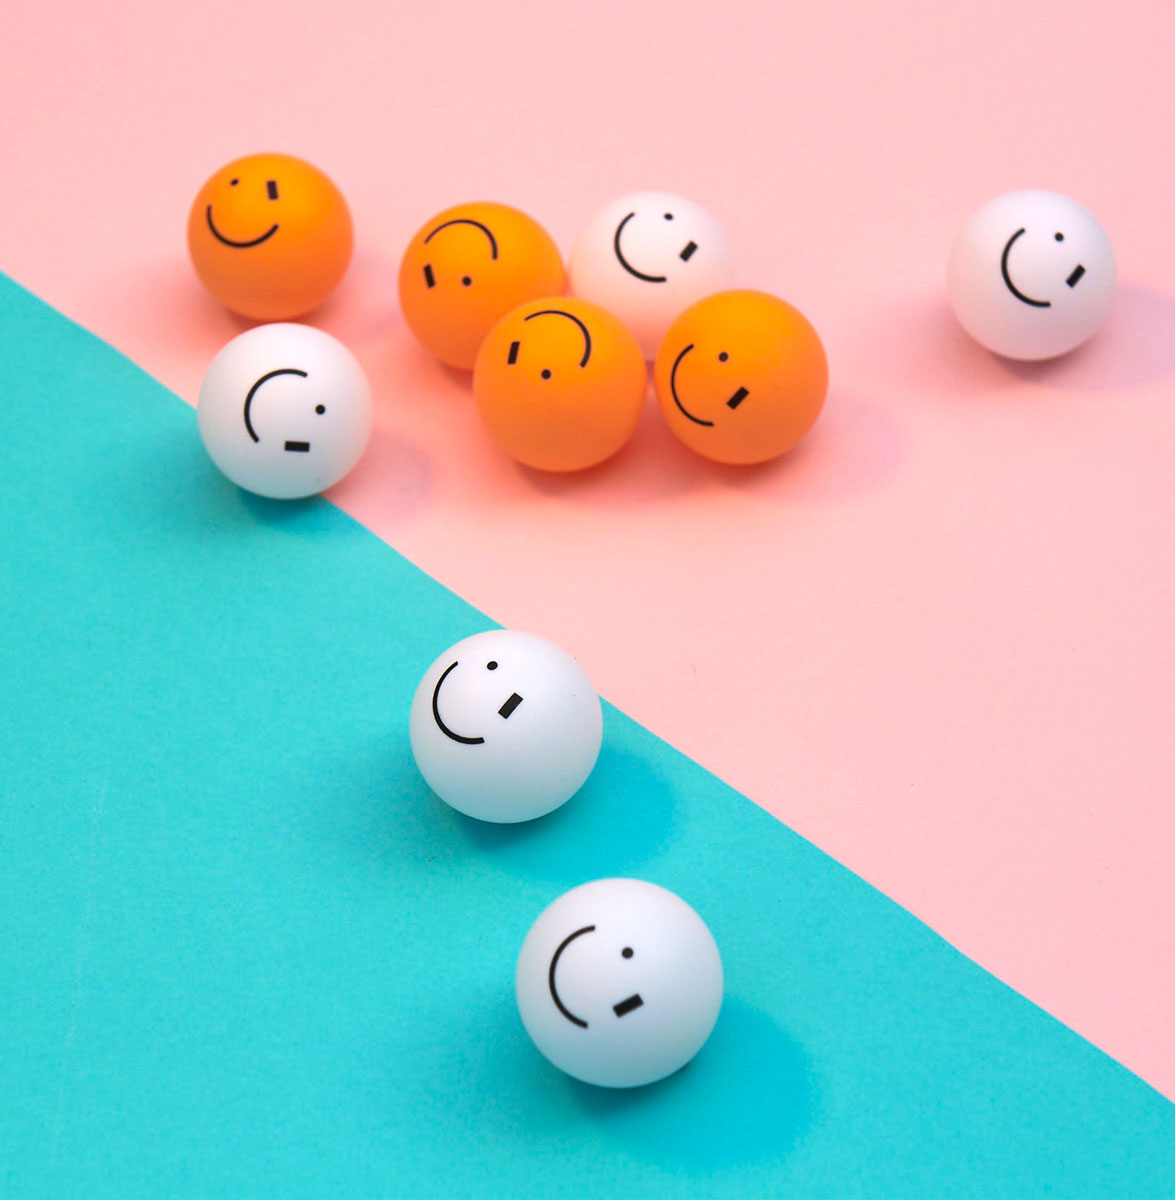 
                  
                    SMILEY WINK 2 White & 2 Orange Ping Pong Balls
                  
                